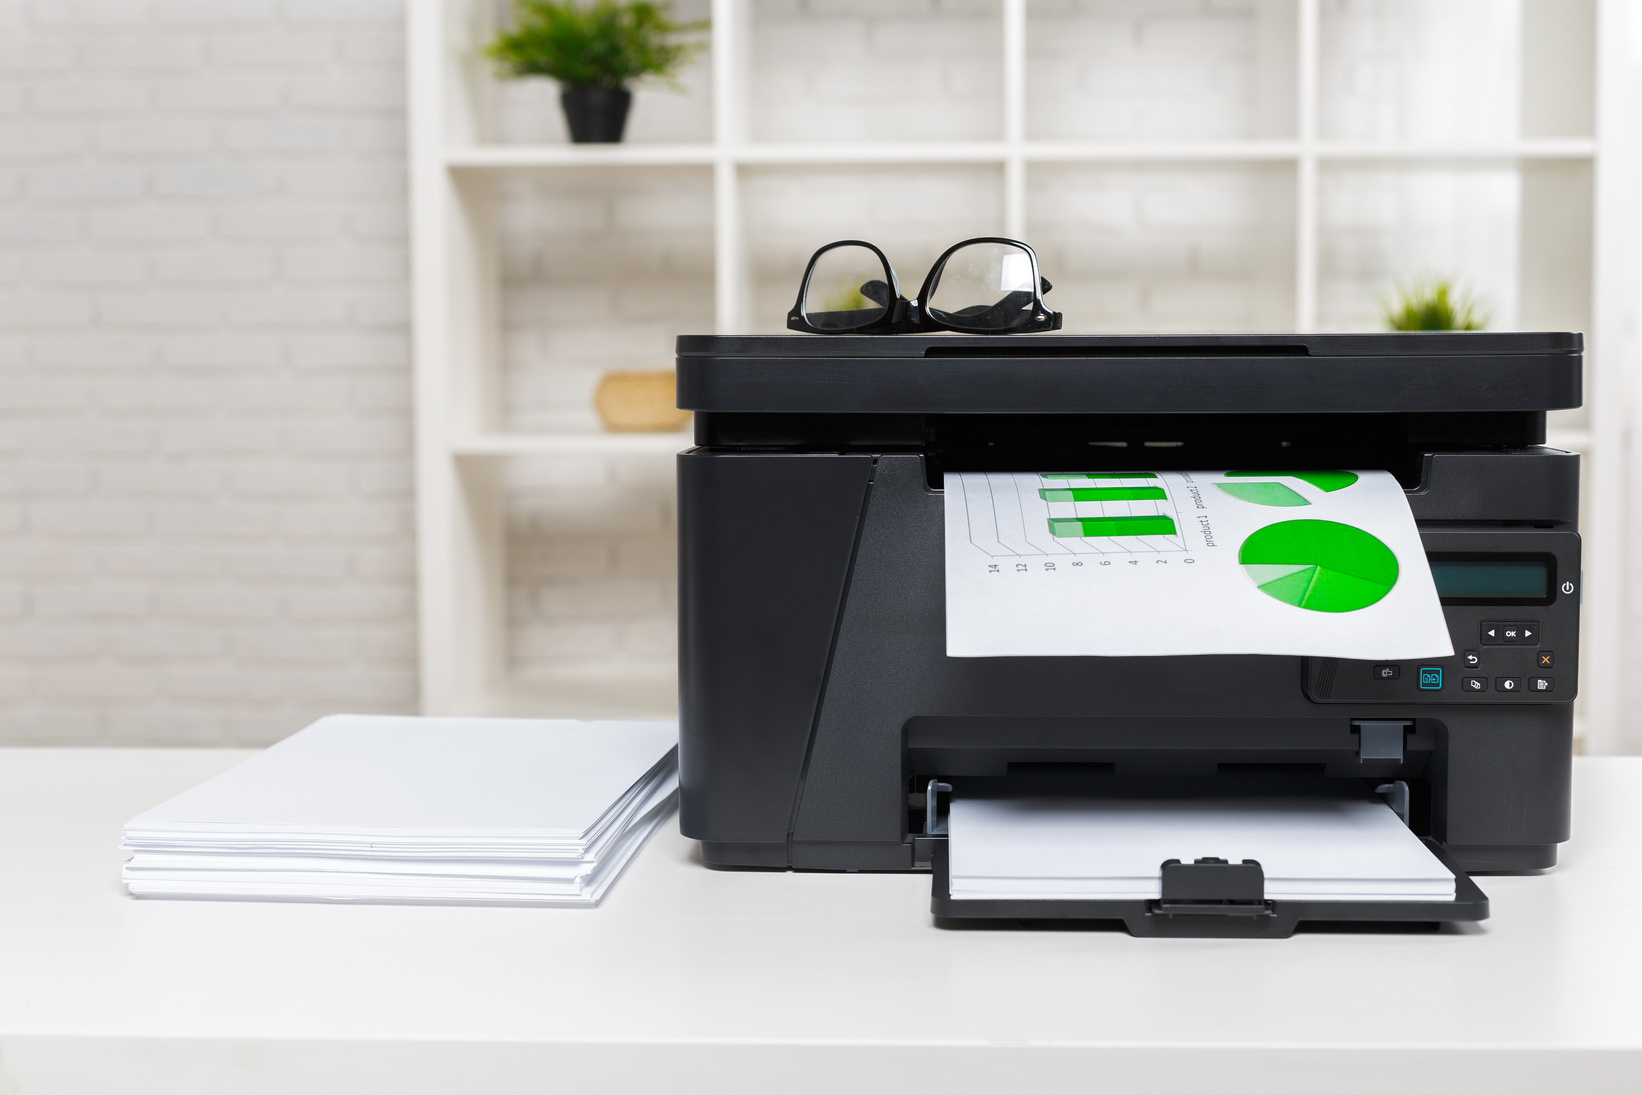 printer in office